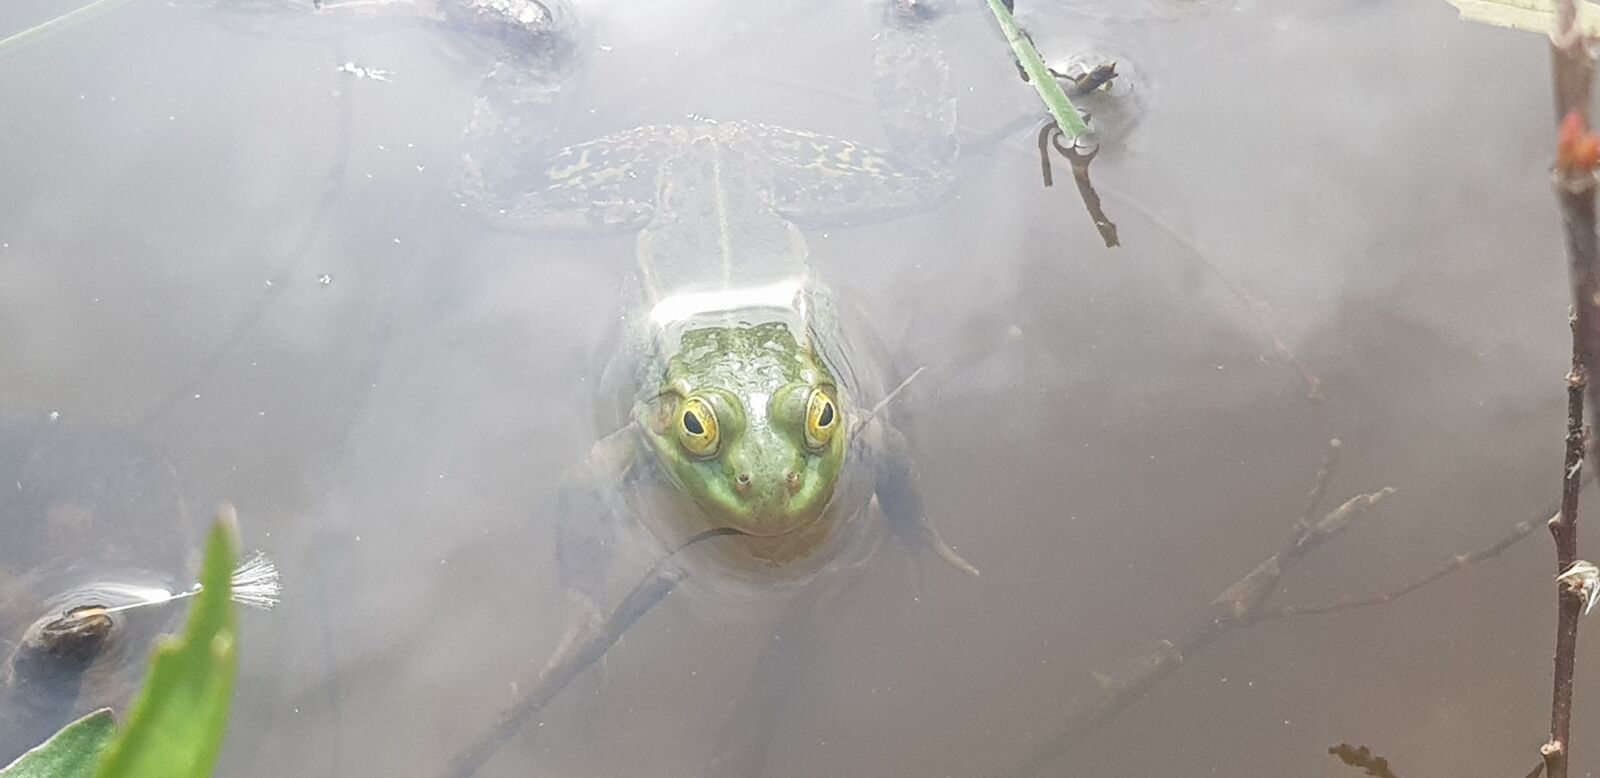 Samsung Galaxy S8 sample photo. Frog, green, lake photography